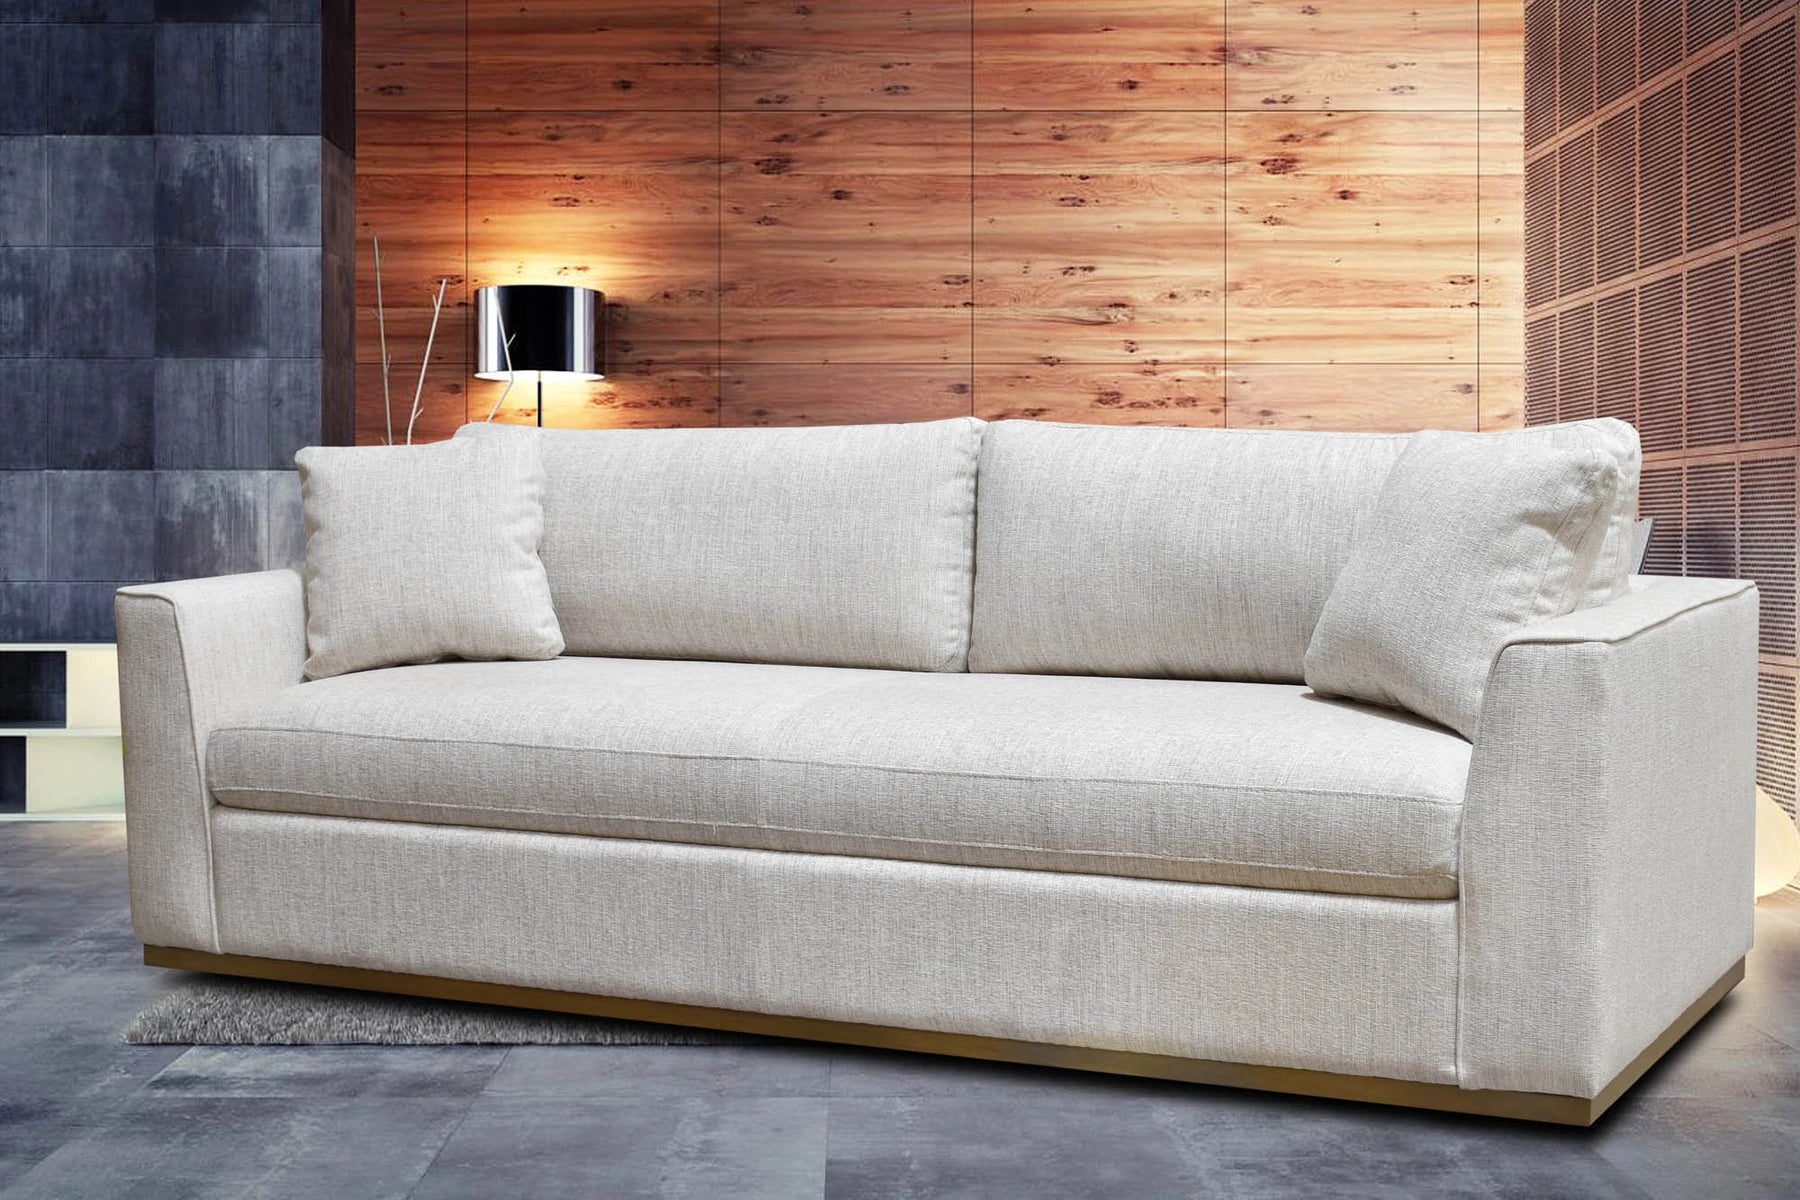 Ander Sofa - Woven Linen